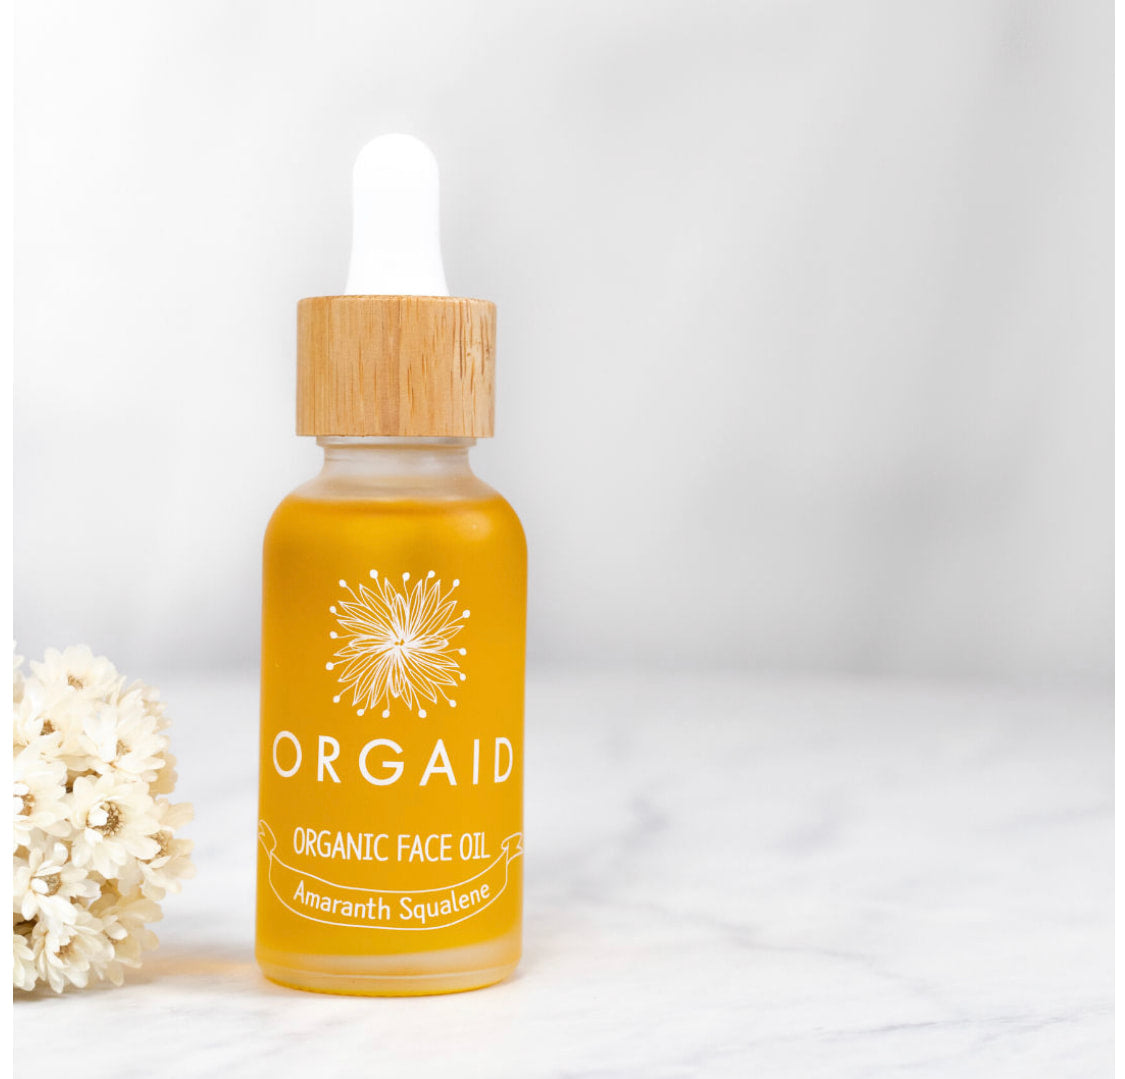 Orgaid Organic Face Oil